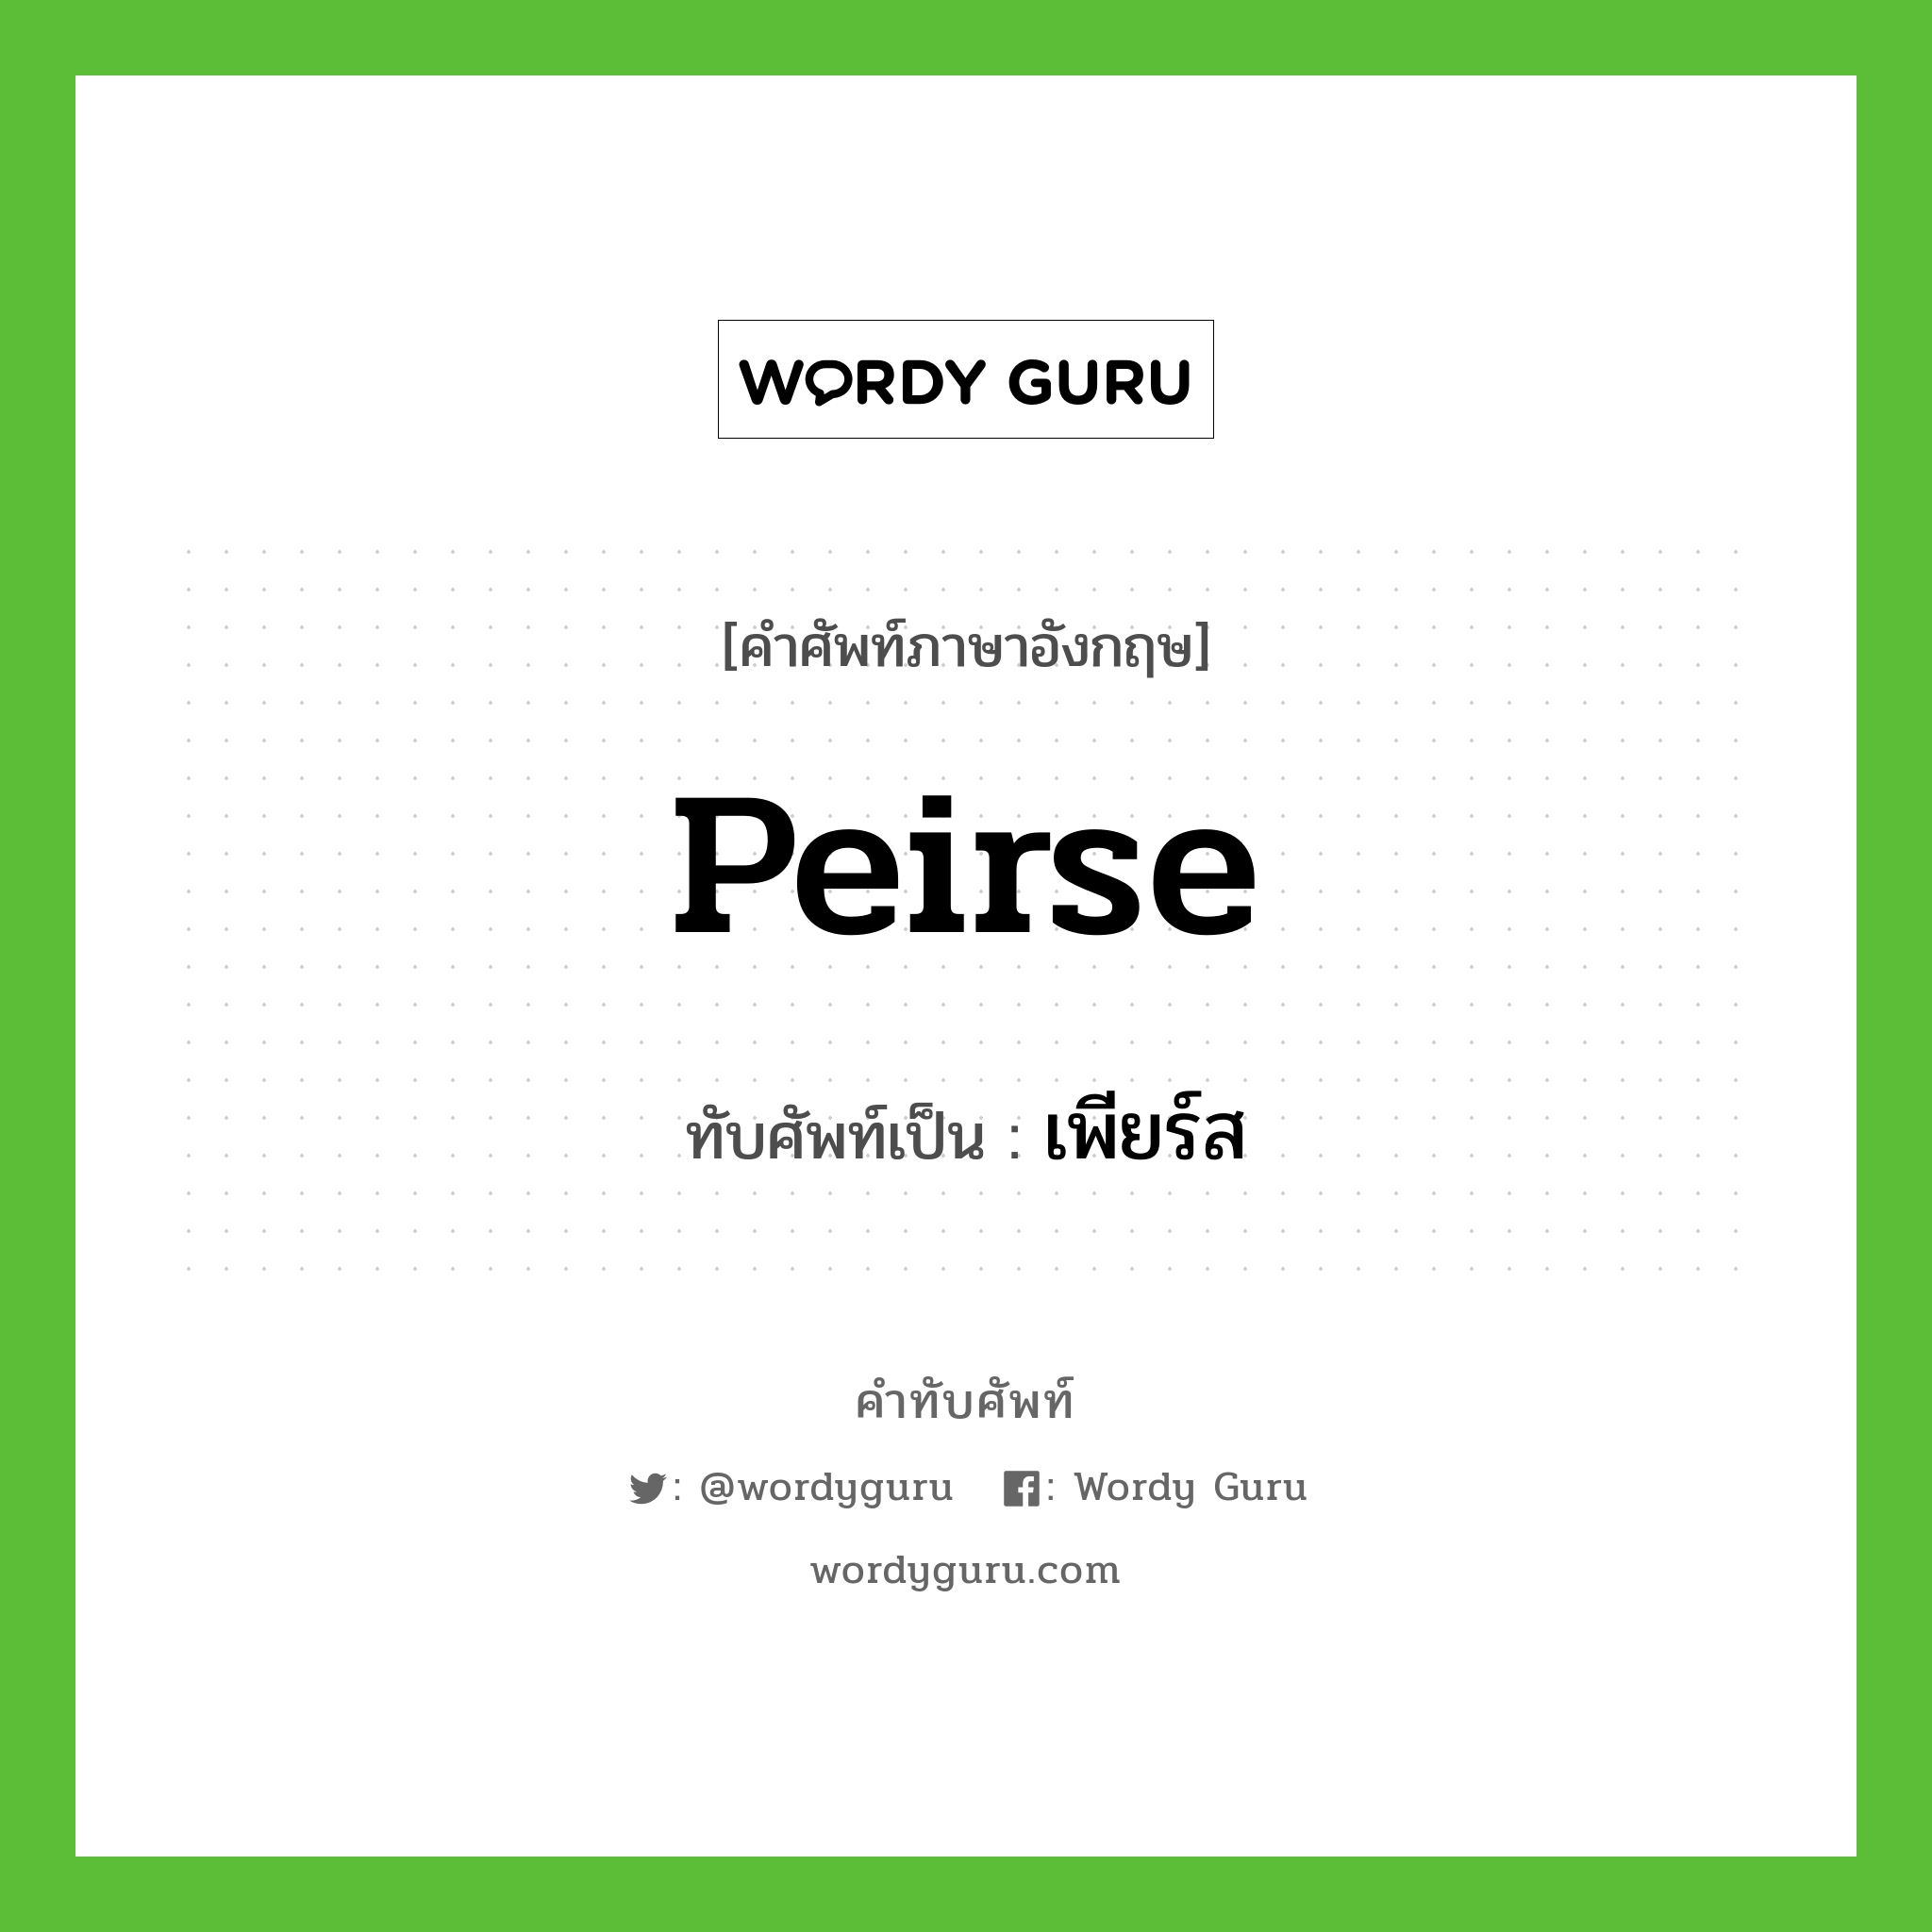 Peirse เขียนเป็นคำไทยว่าอะไร?, คำศัพท์ภาษาอังกฤษ Peirse ทับศัพท์เป็น เพียร์ส